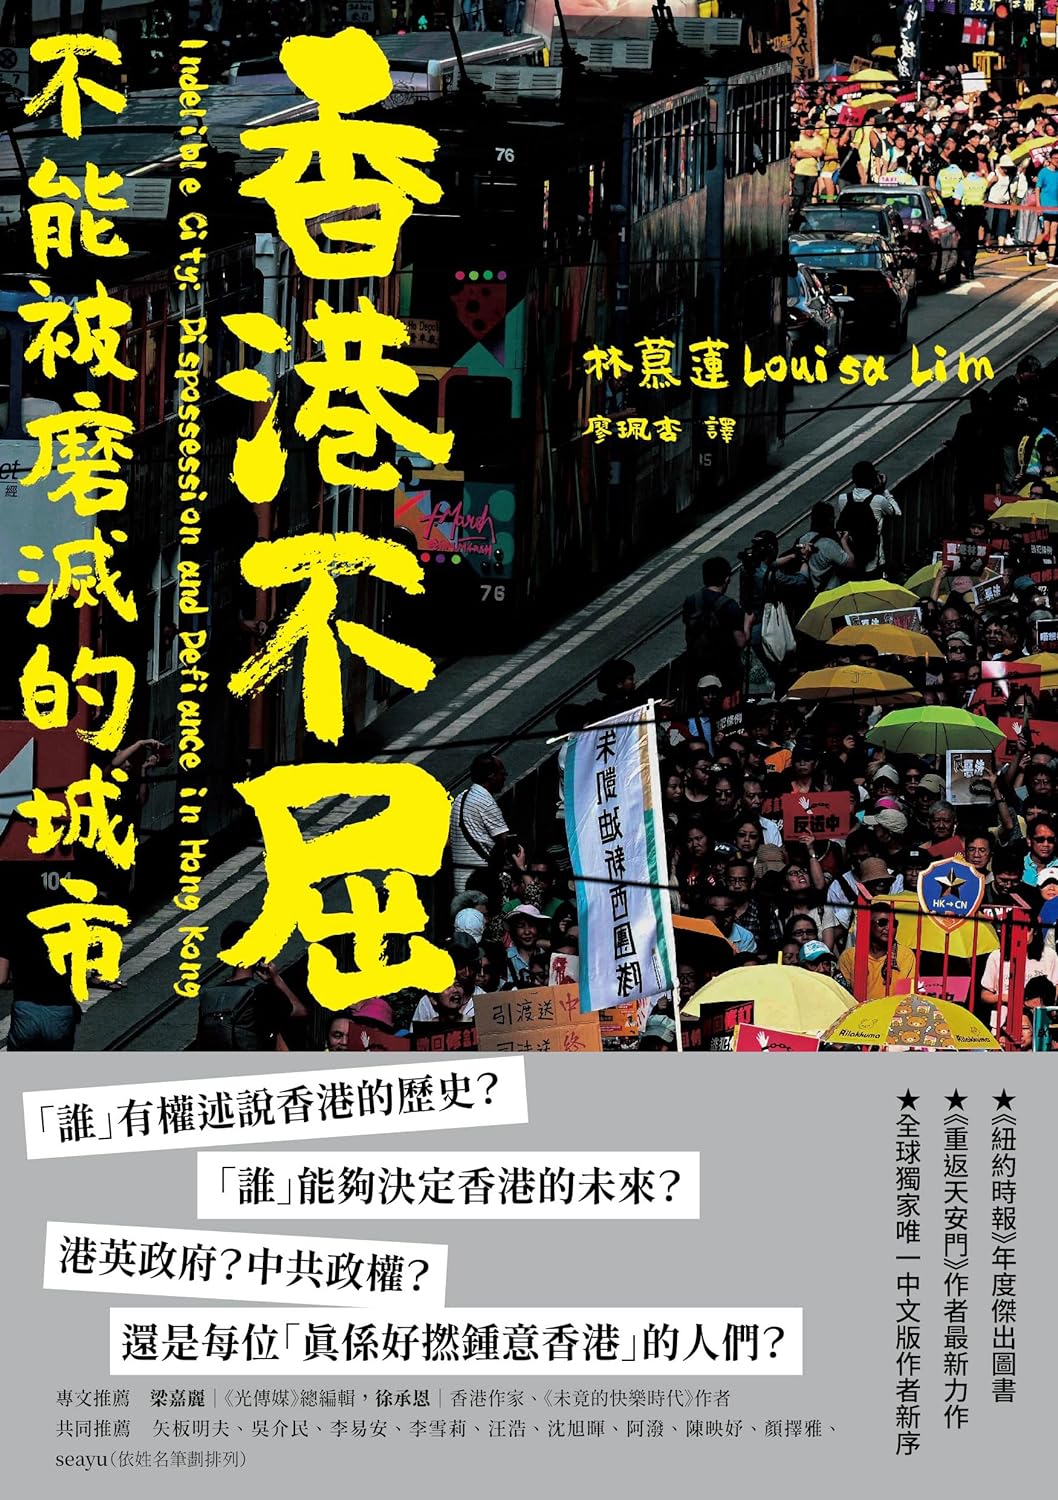 香港不屈：不能被磨滅的城市 Indelible City: Dispossession and Defiance in Hong Kong